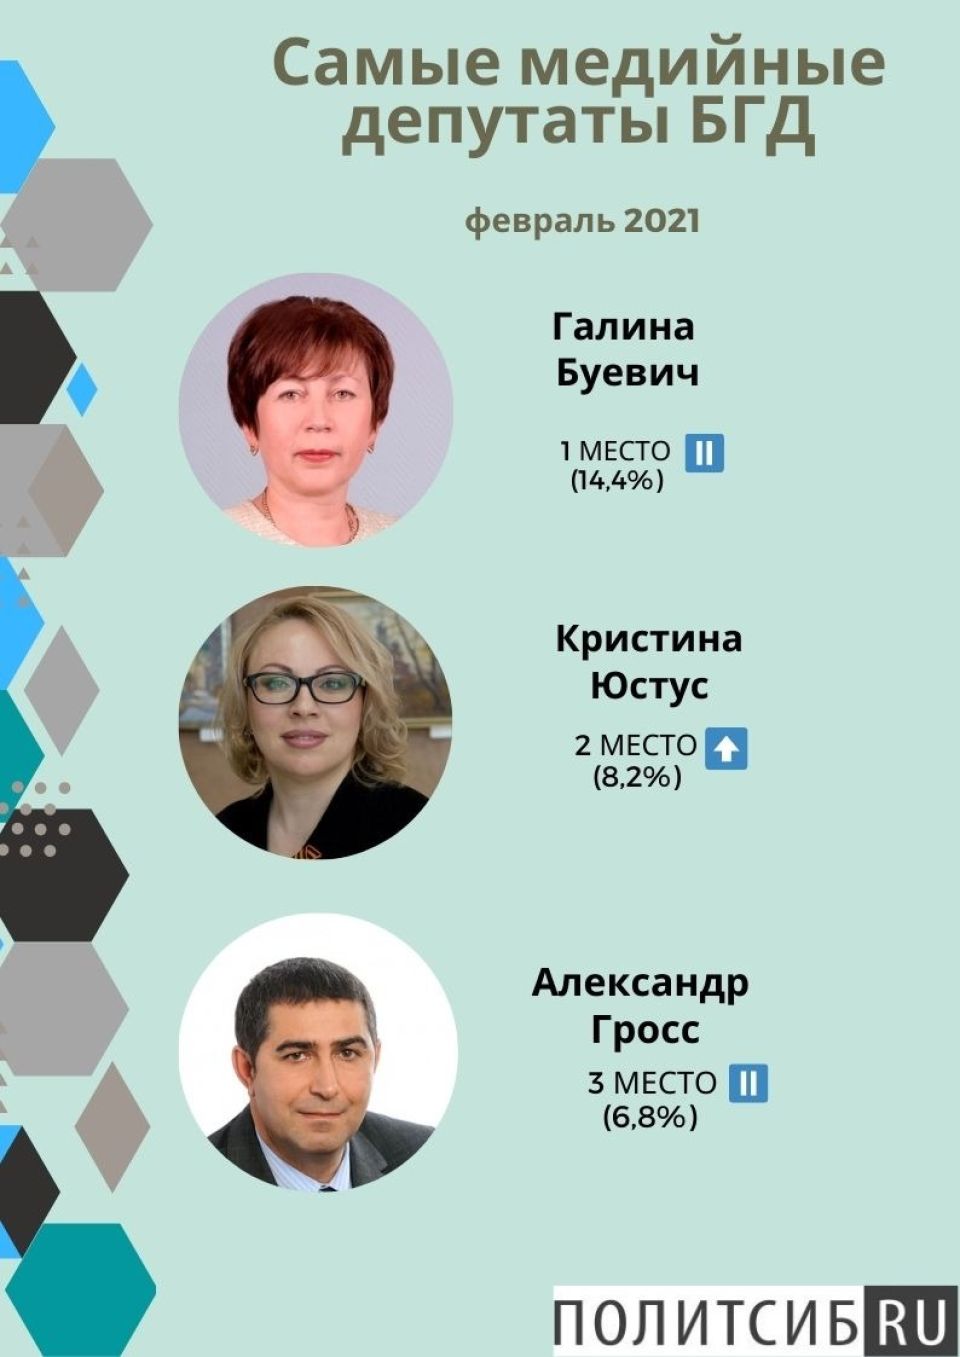 Рейтинг медийности депутатов БГД, февраль 2021 года